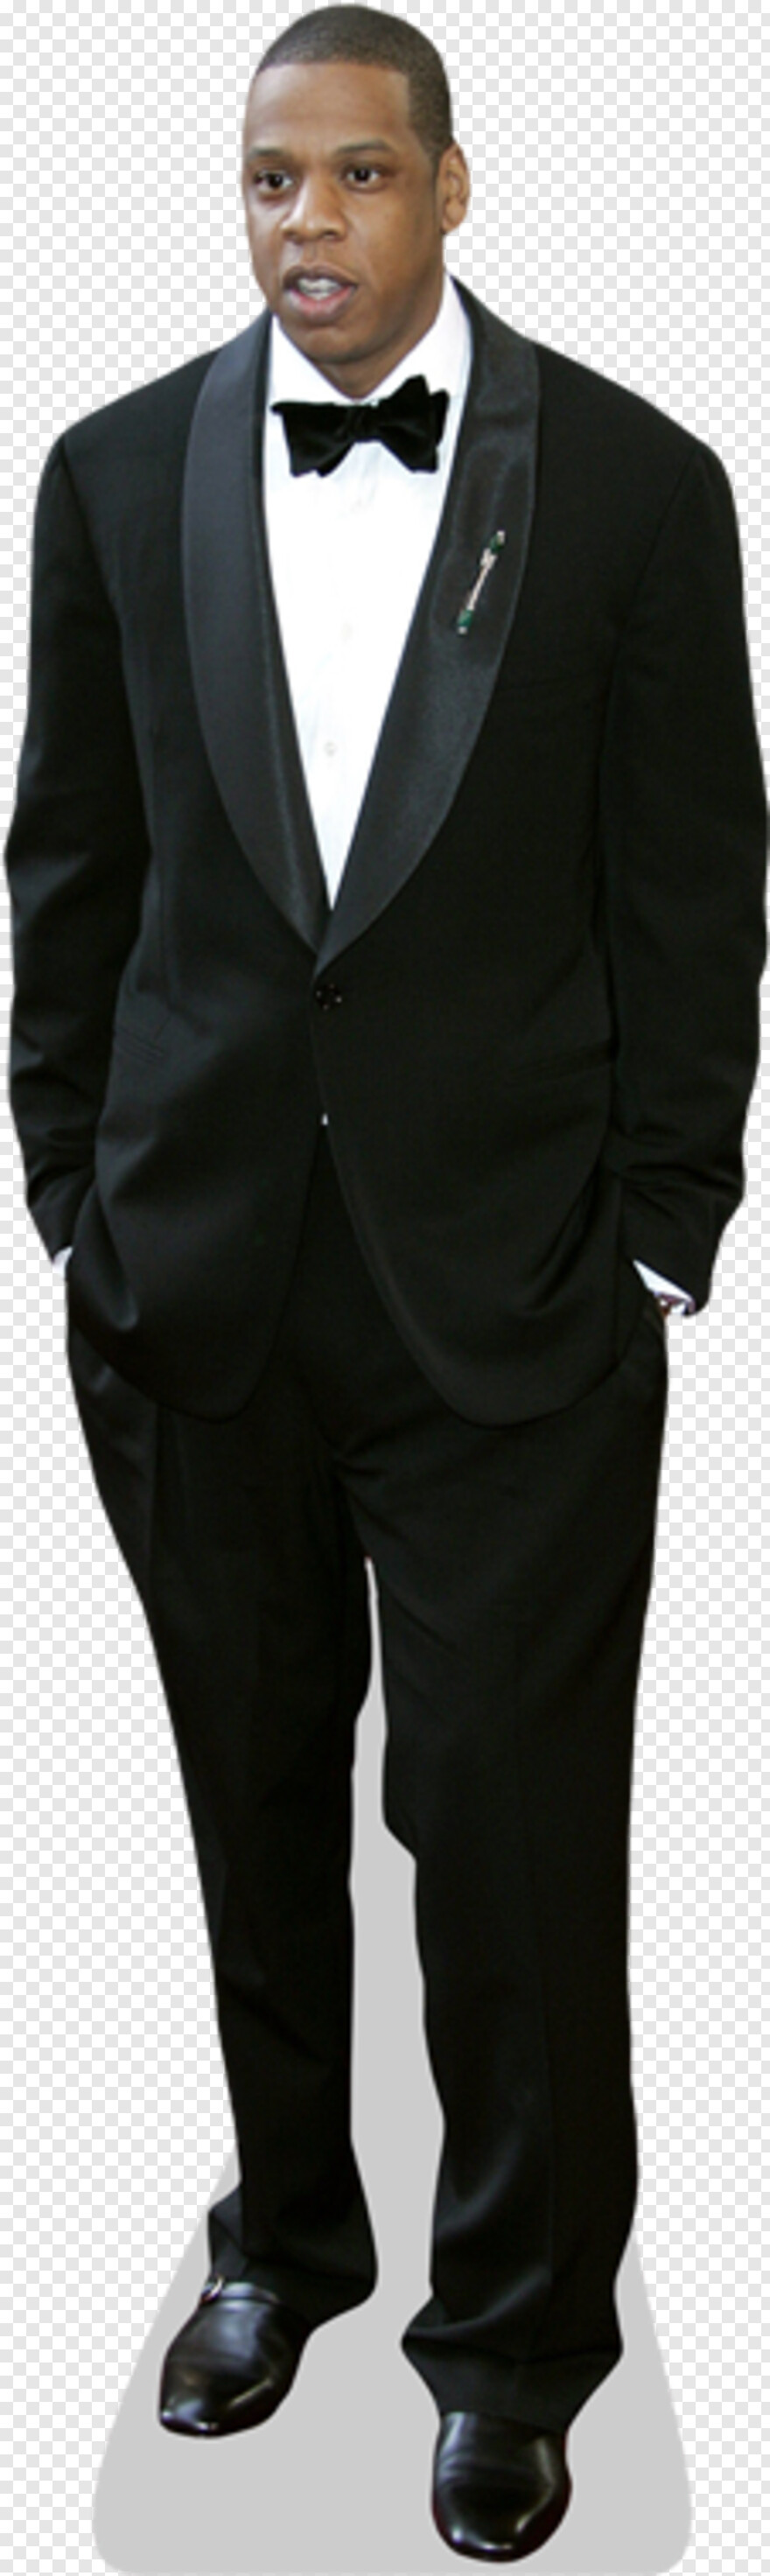 Tuxedo Free Icon Library - dress suit tuxedo roblox